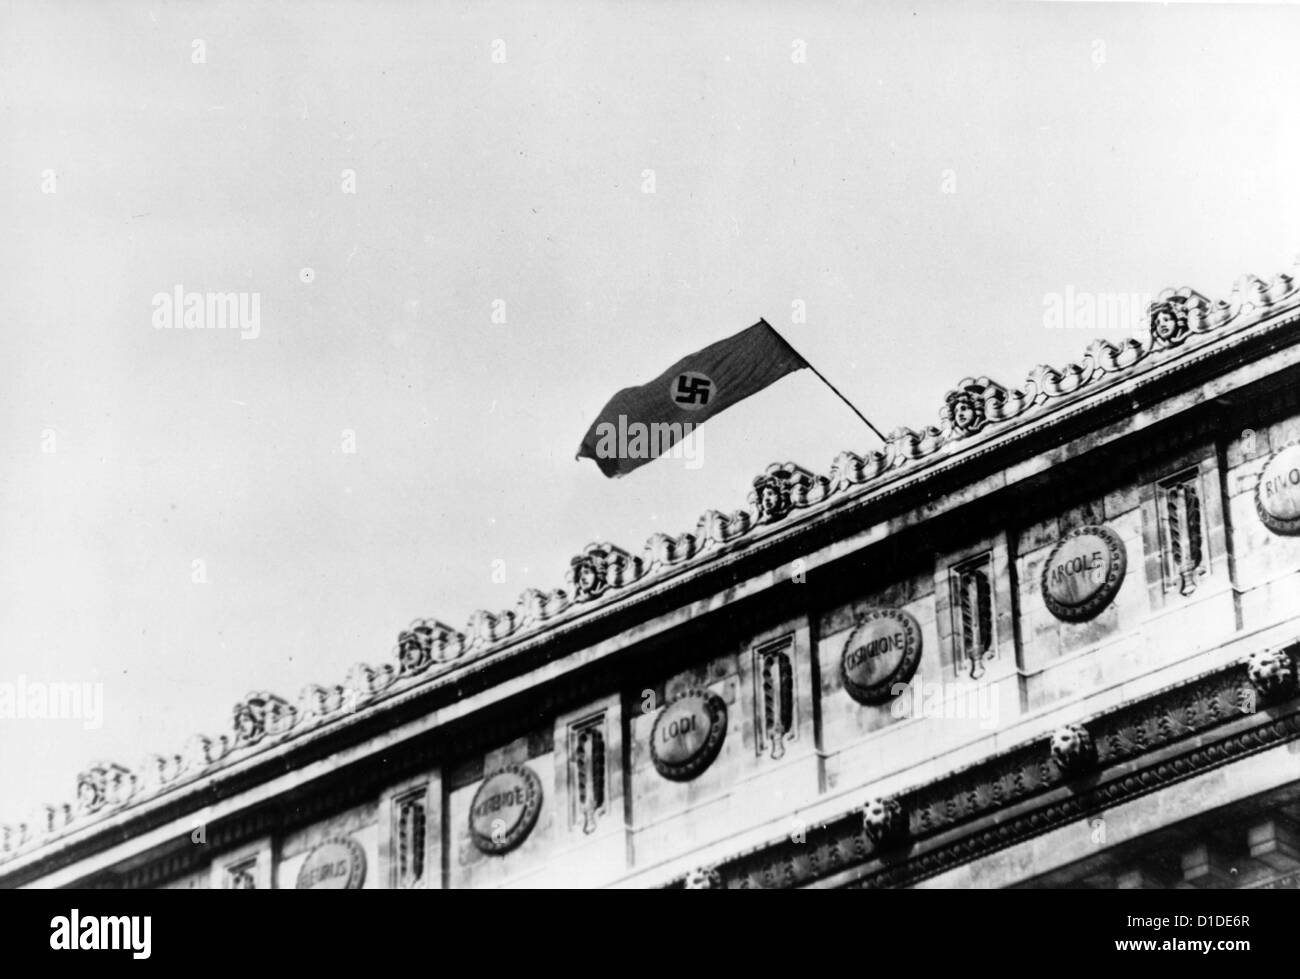 Una bandiera tedesca della svastika viene issata sull'Arco di Trionfo a Parigi, in Francia, durante l'invasione della città da parte delle truppe tedesche. Fotoarchiv für Zeitgeschichte Foto Stock